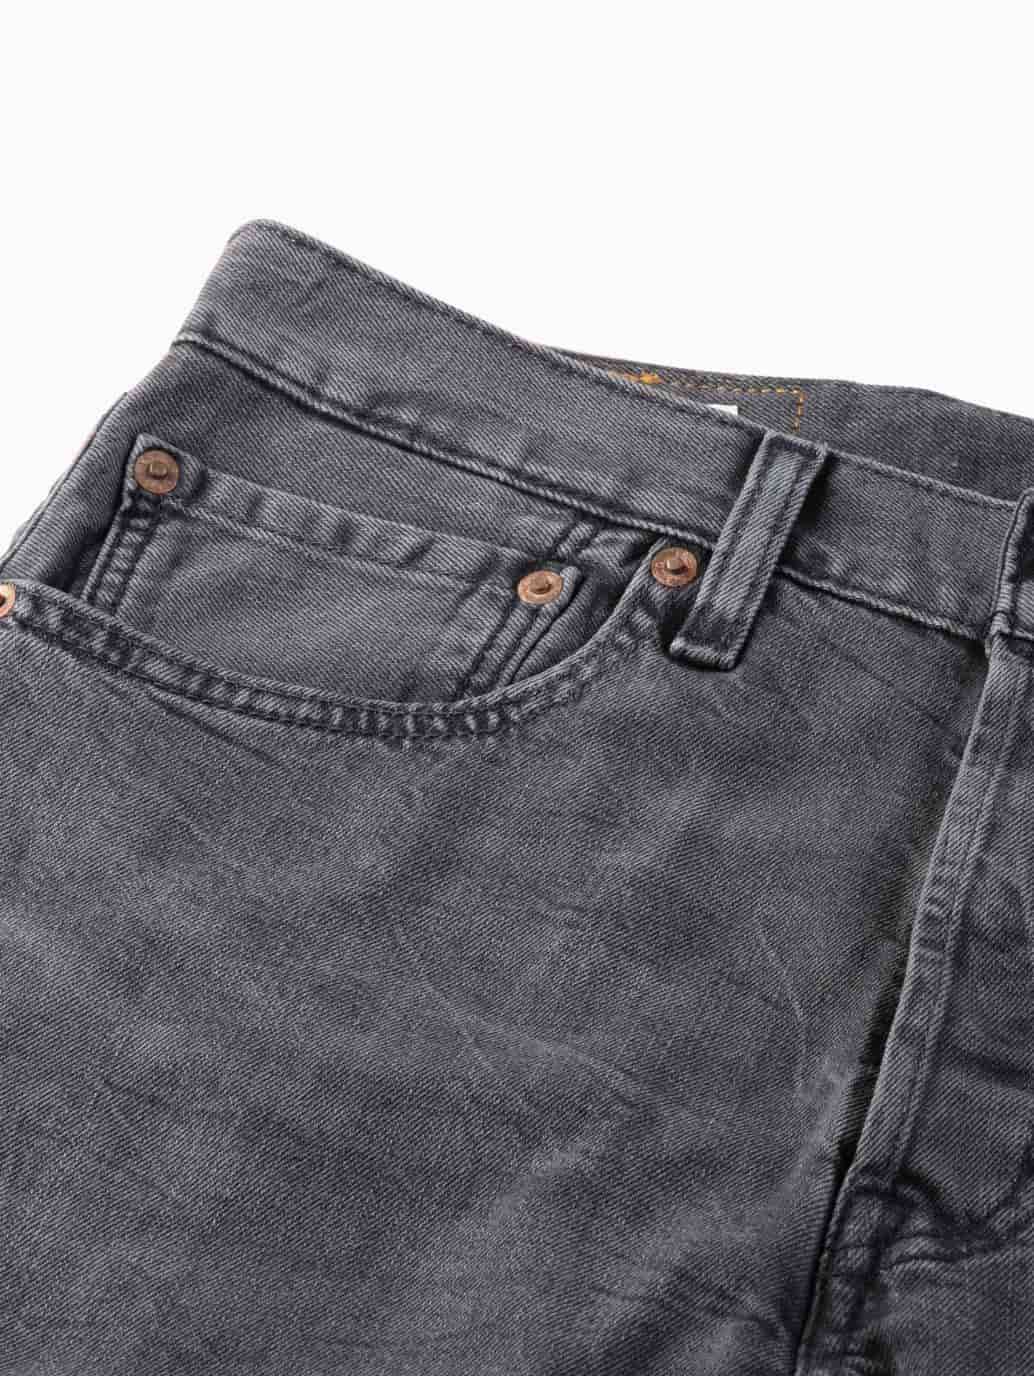 levis malaysia 501 original fit jeans for men parrish details